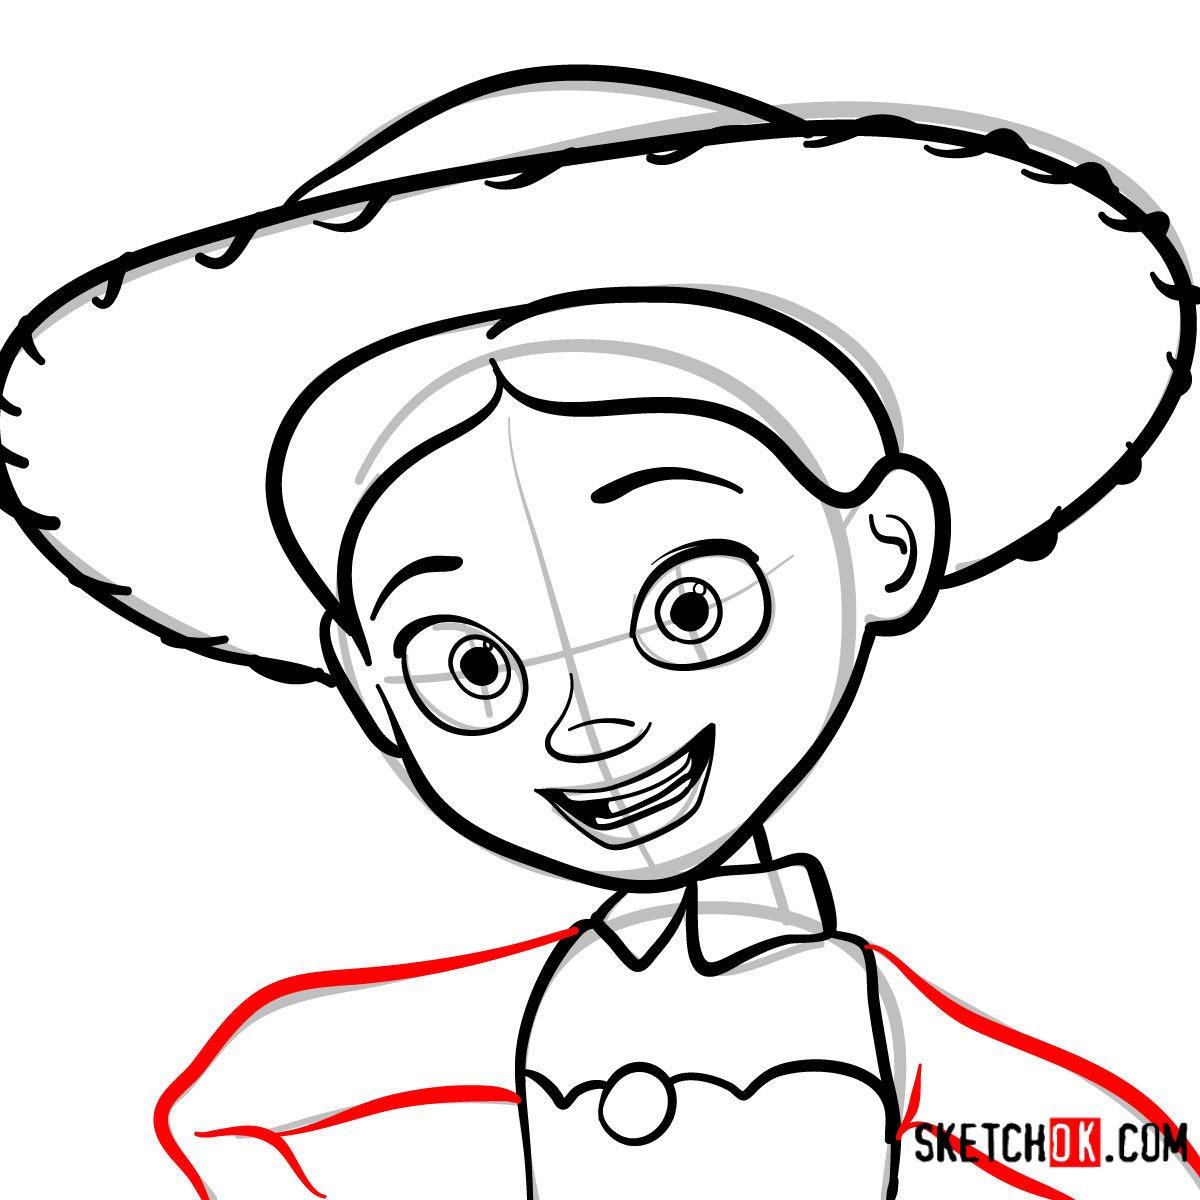 How to draw a portrait of Jessie | Toy Story - step 08